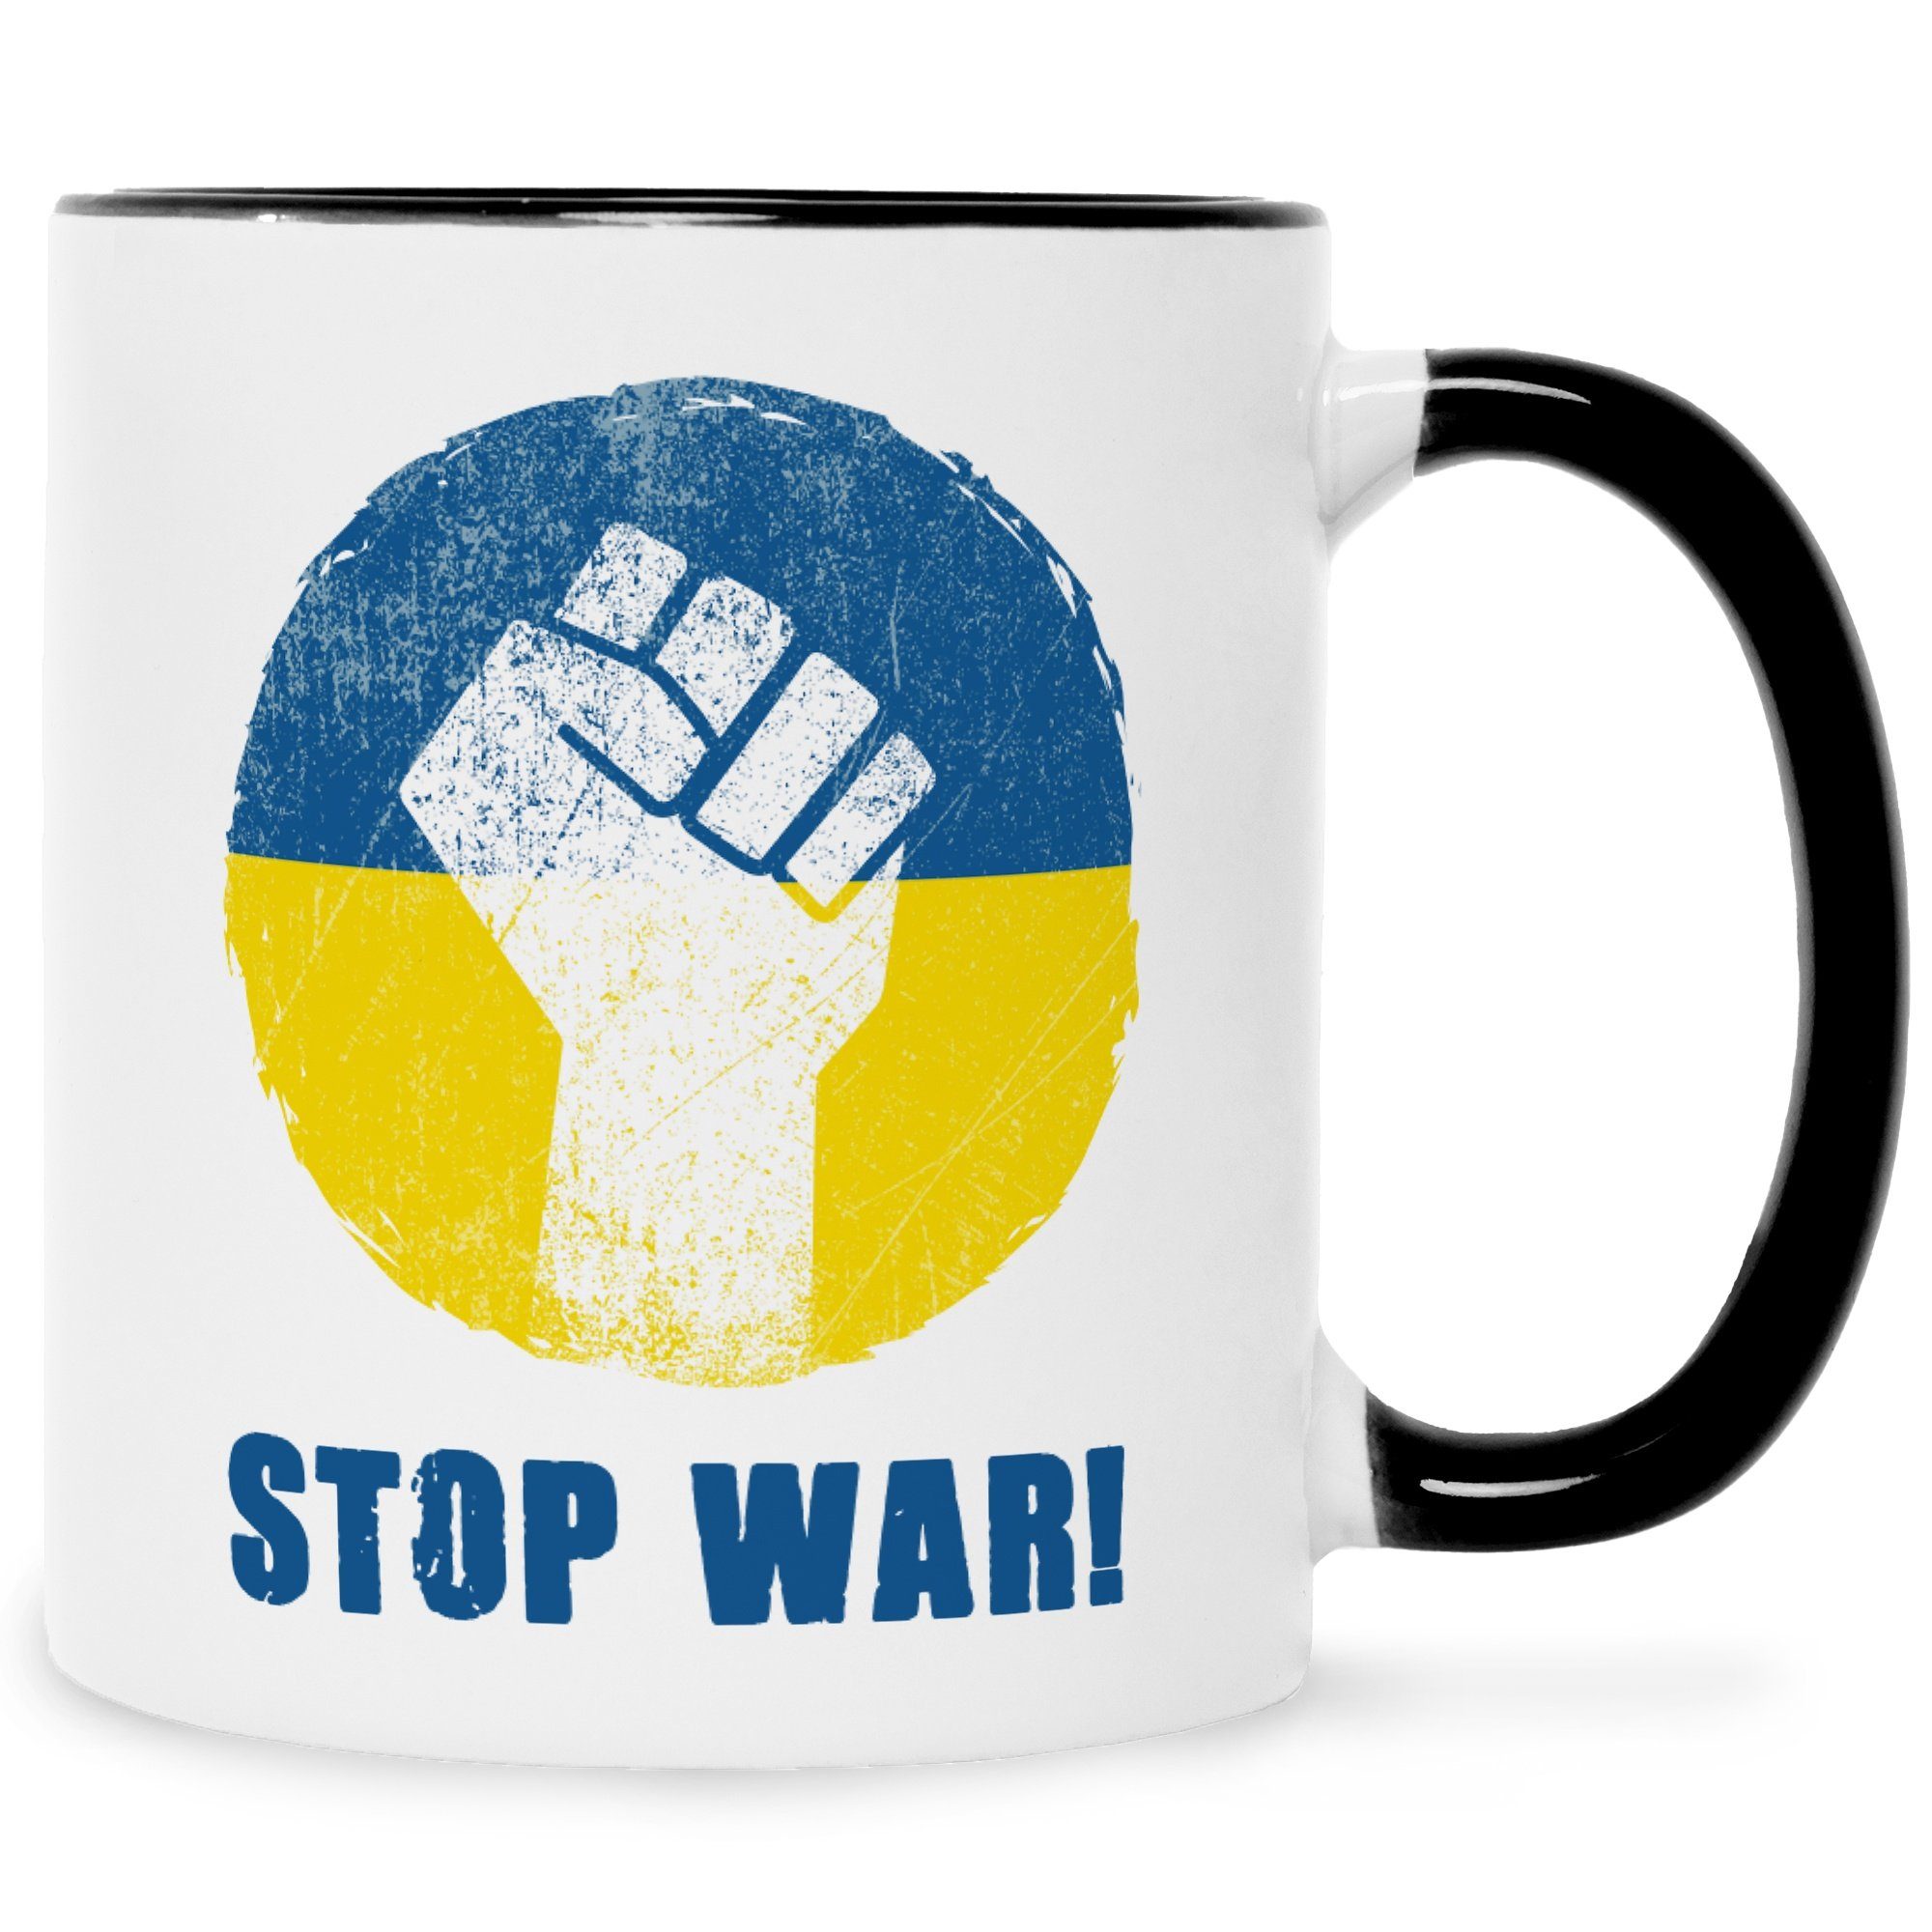 GRAVURZEILE Tasse Bedruckte Tasse - Stop War - Frieden für die Ukraine, Keramik, bedruckte Statement Tasse zum Ukraine Konflikt Schwarz Weiß